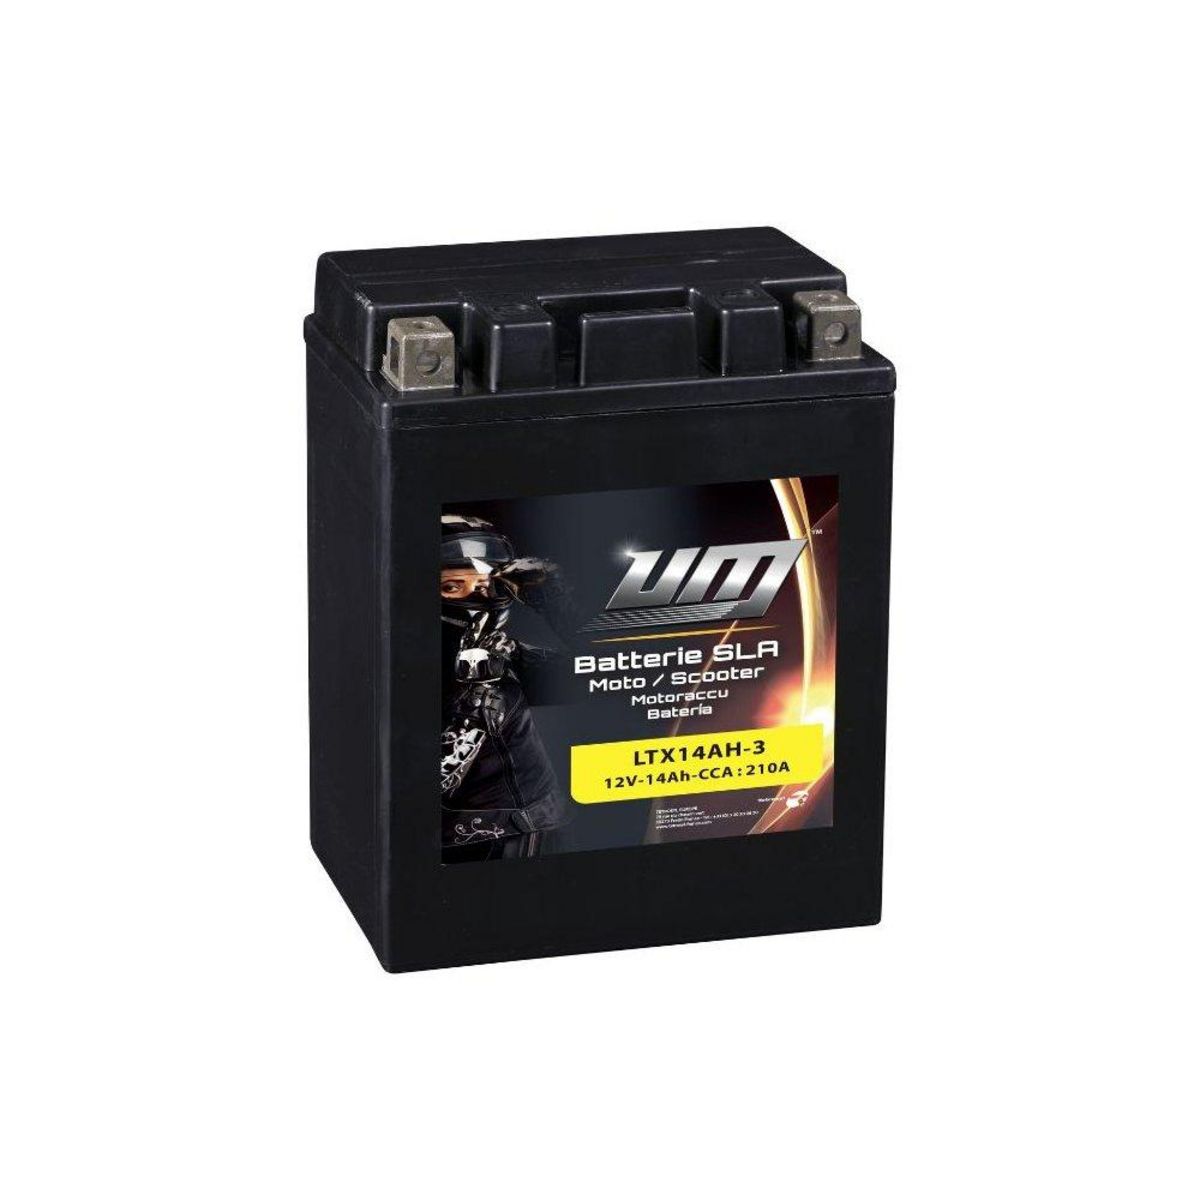 Batterie Moto / Scooter - LTX14AH-3